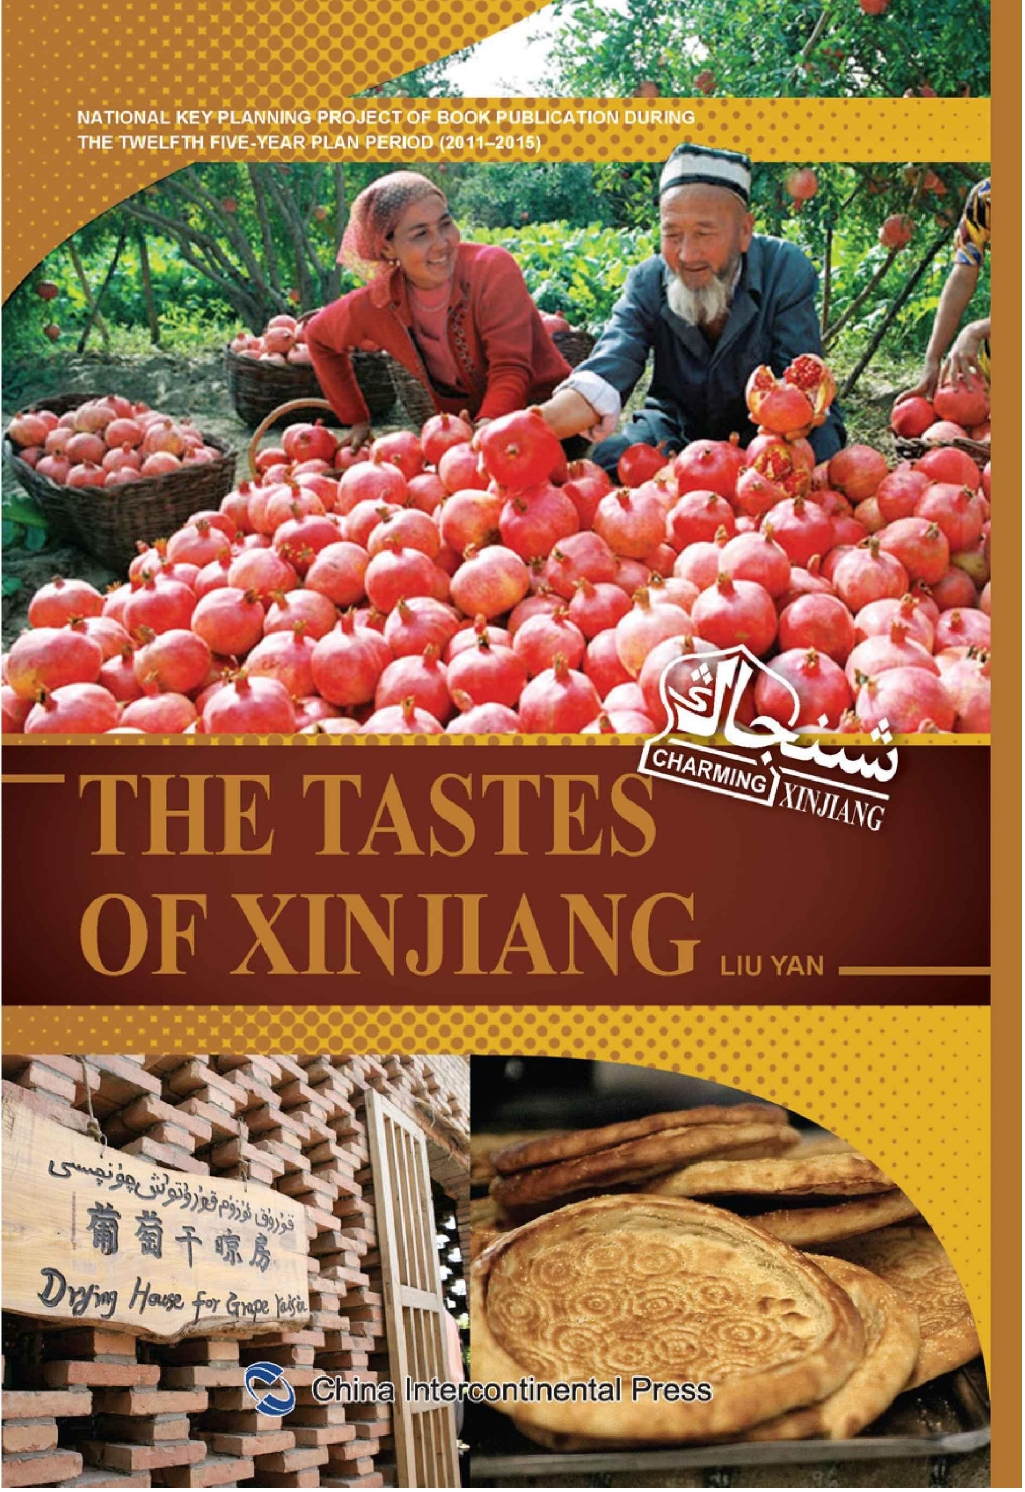 The Tastes of Xinjiang